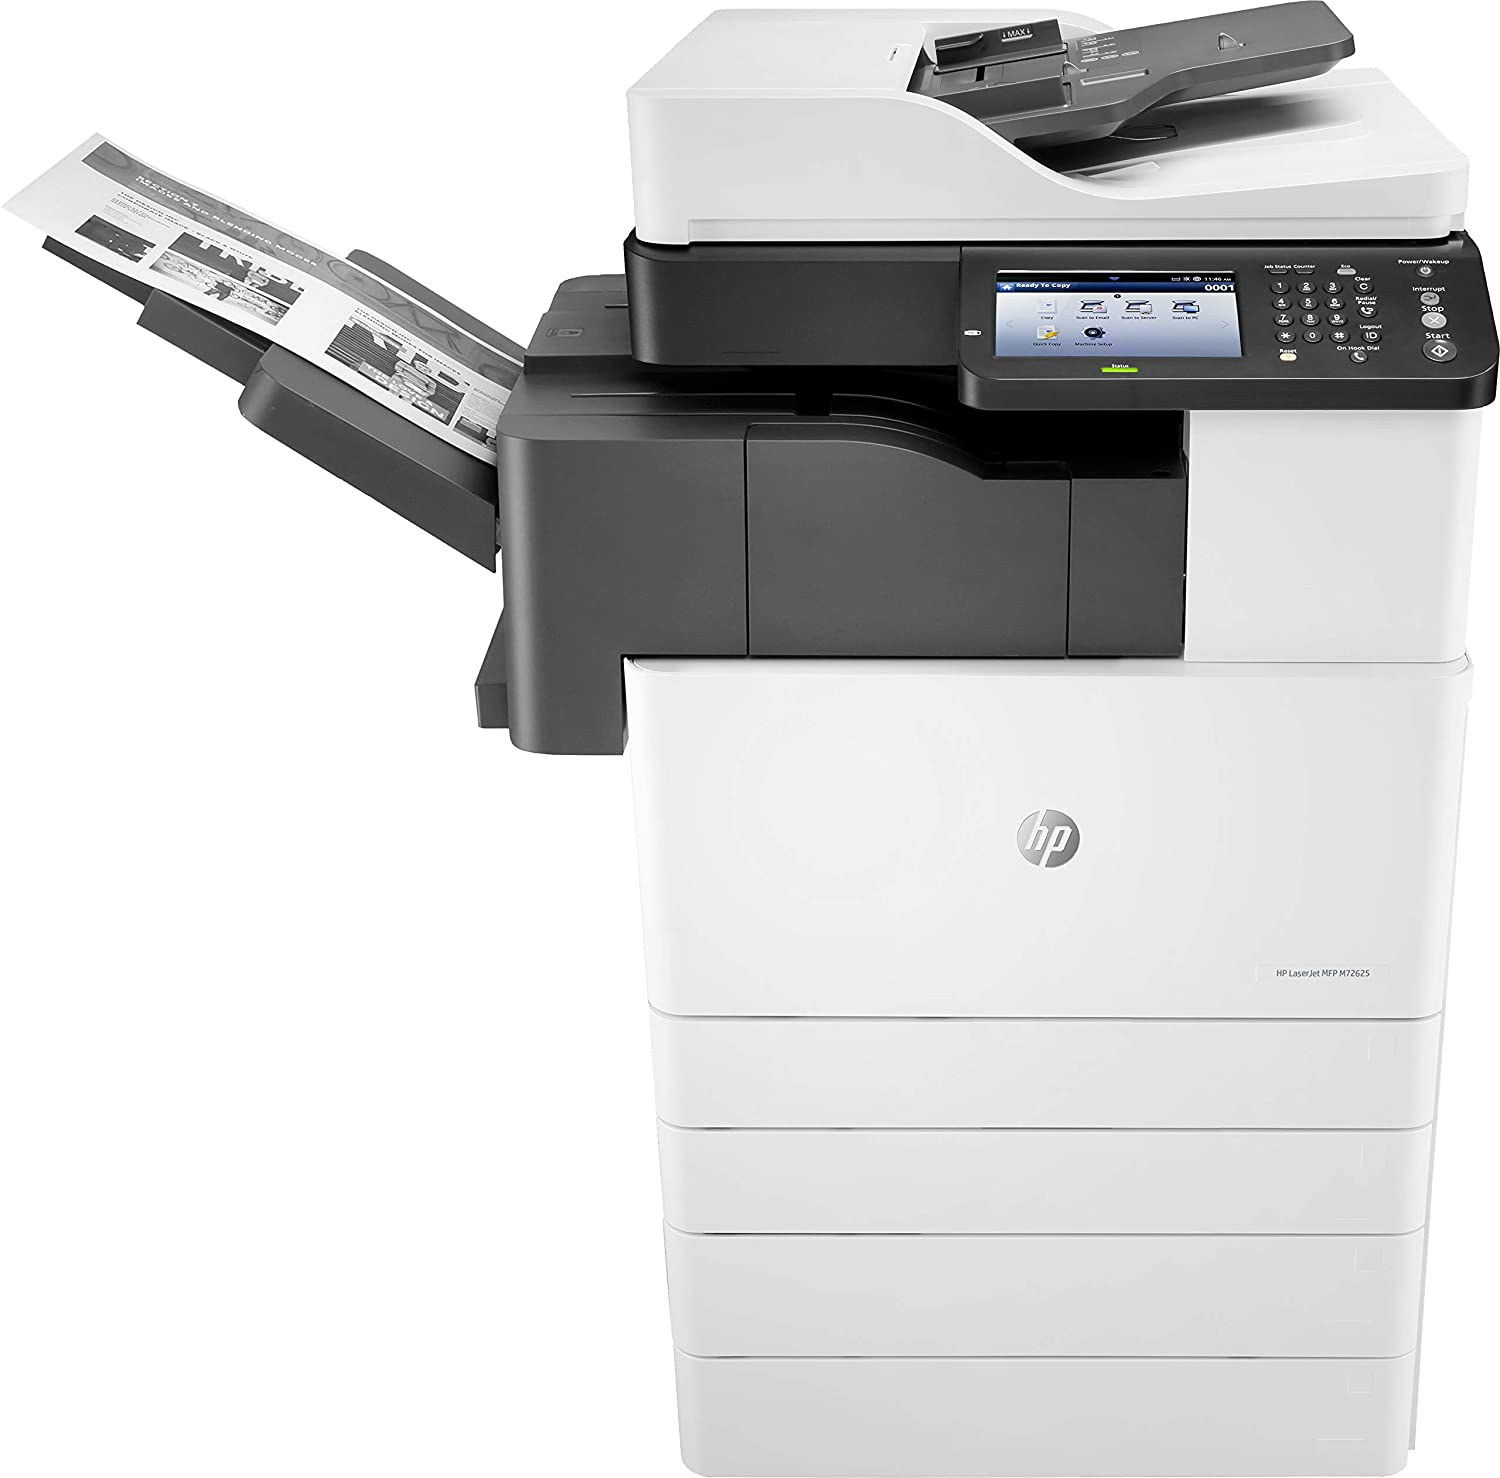 Rental Printer Charges - Mono A3 Copier(Plan 2)